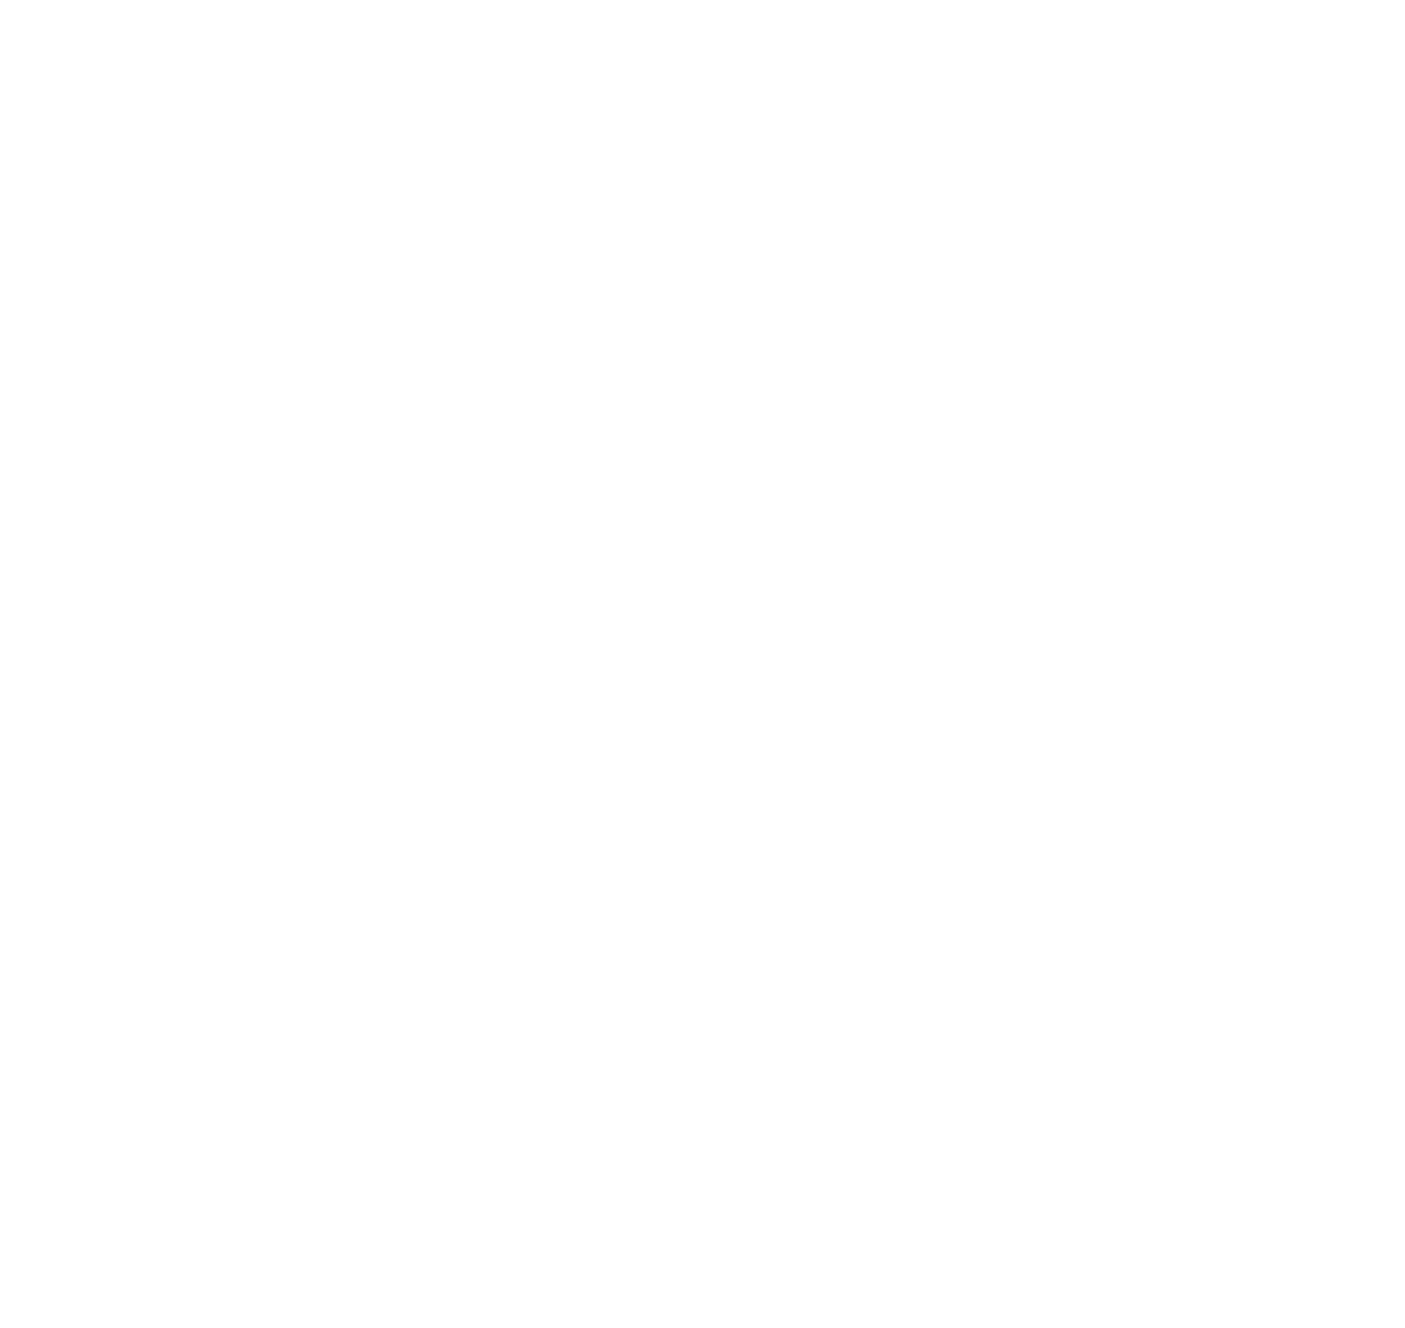 The Icarus Institute